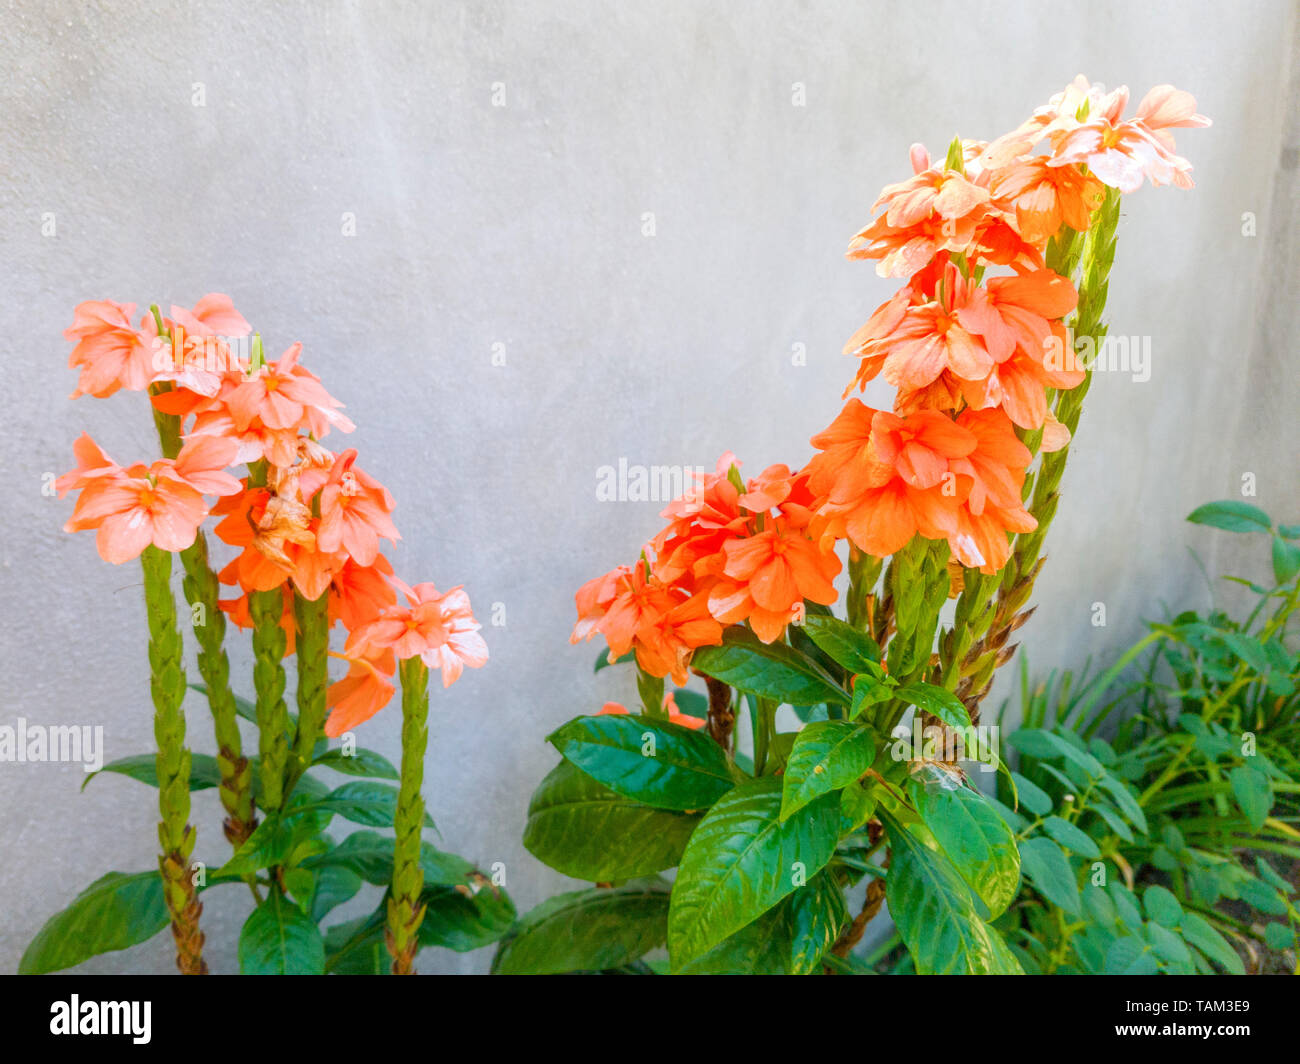 orange begonia with gray background Stock Photo